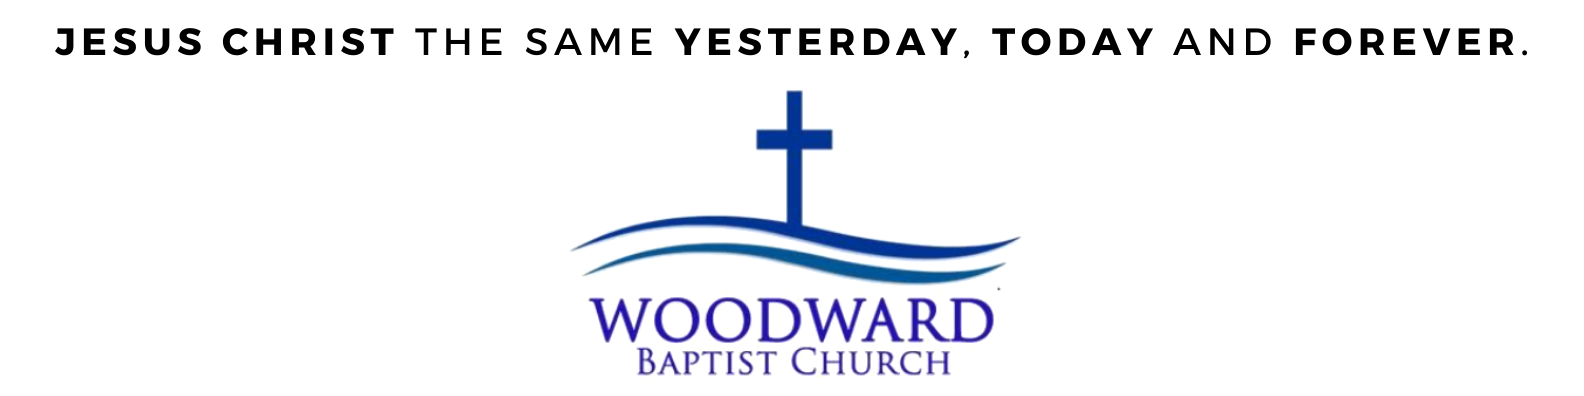 Woodward Baptist Church